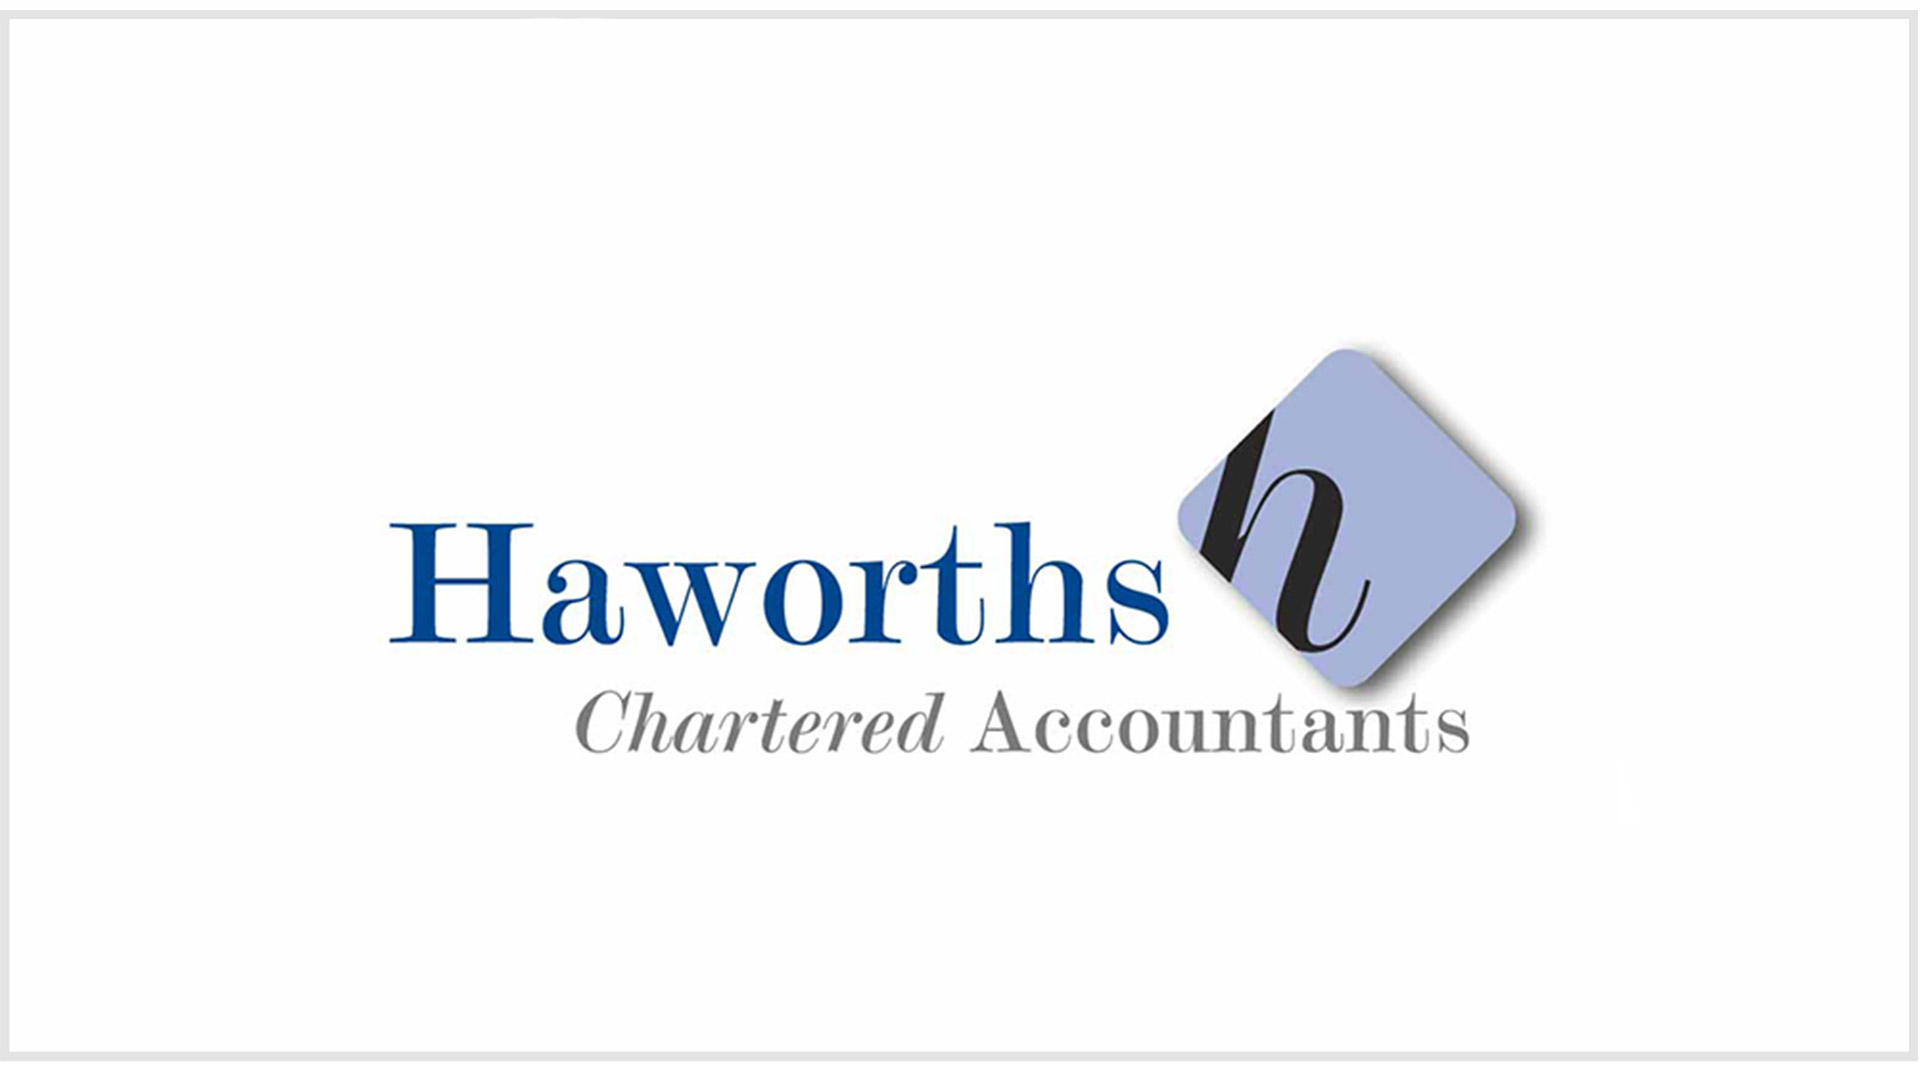 Haworths business logo